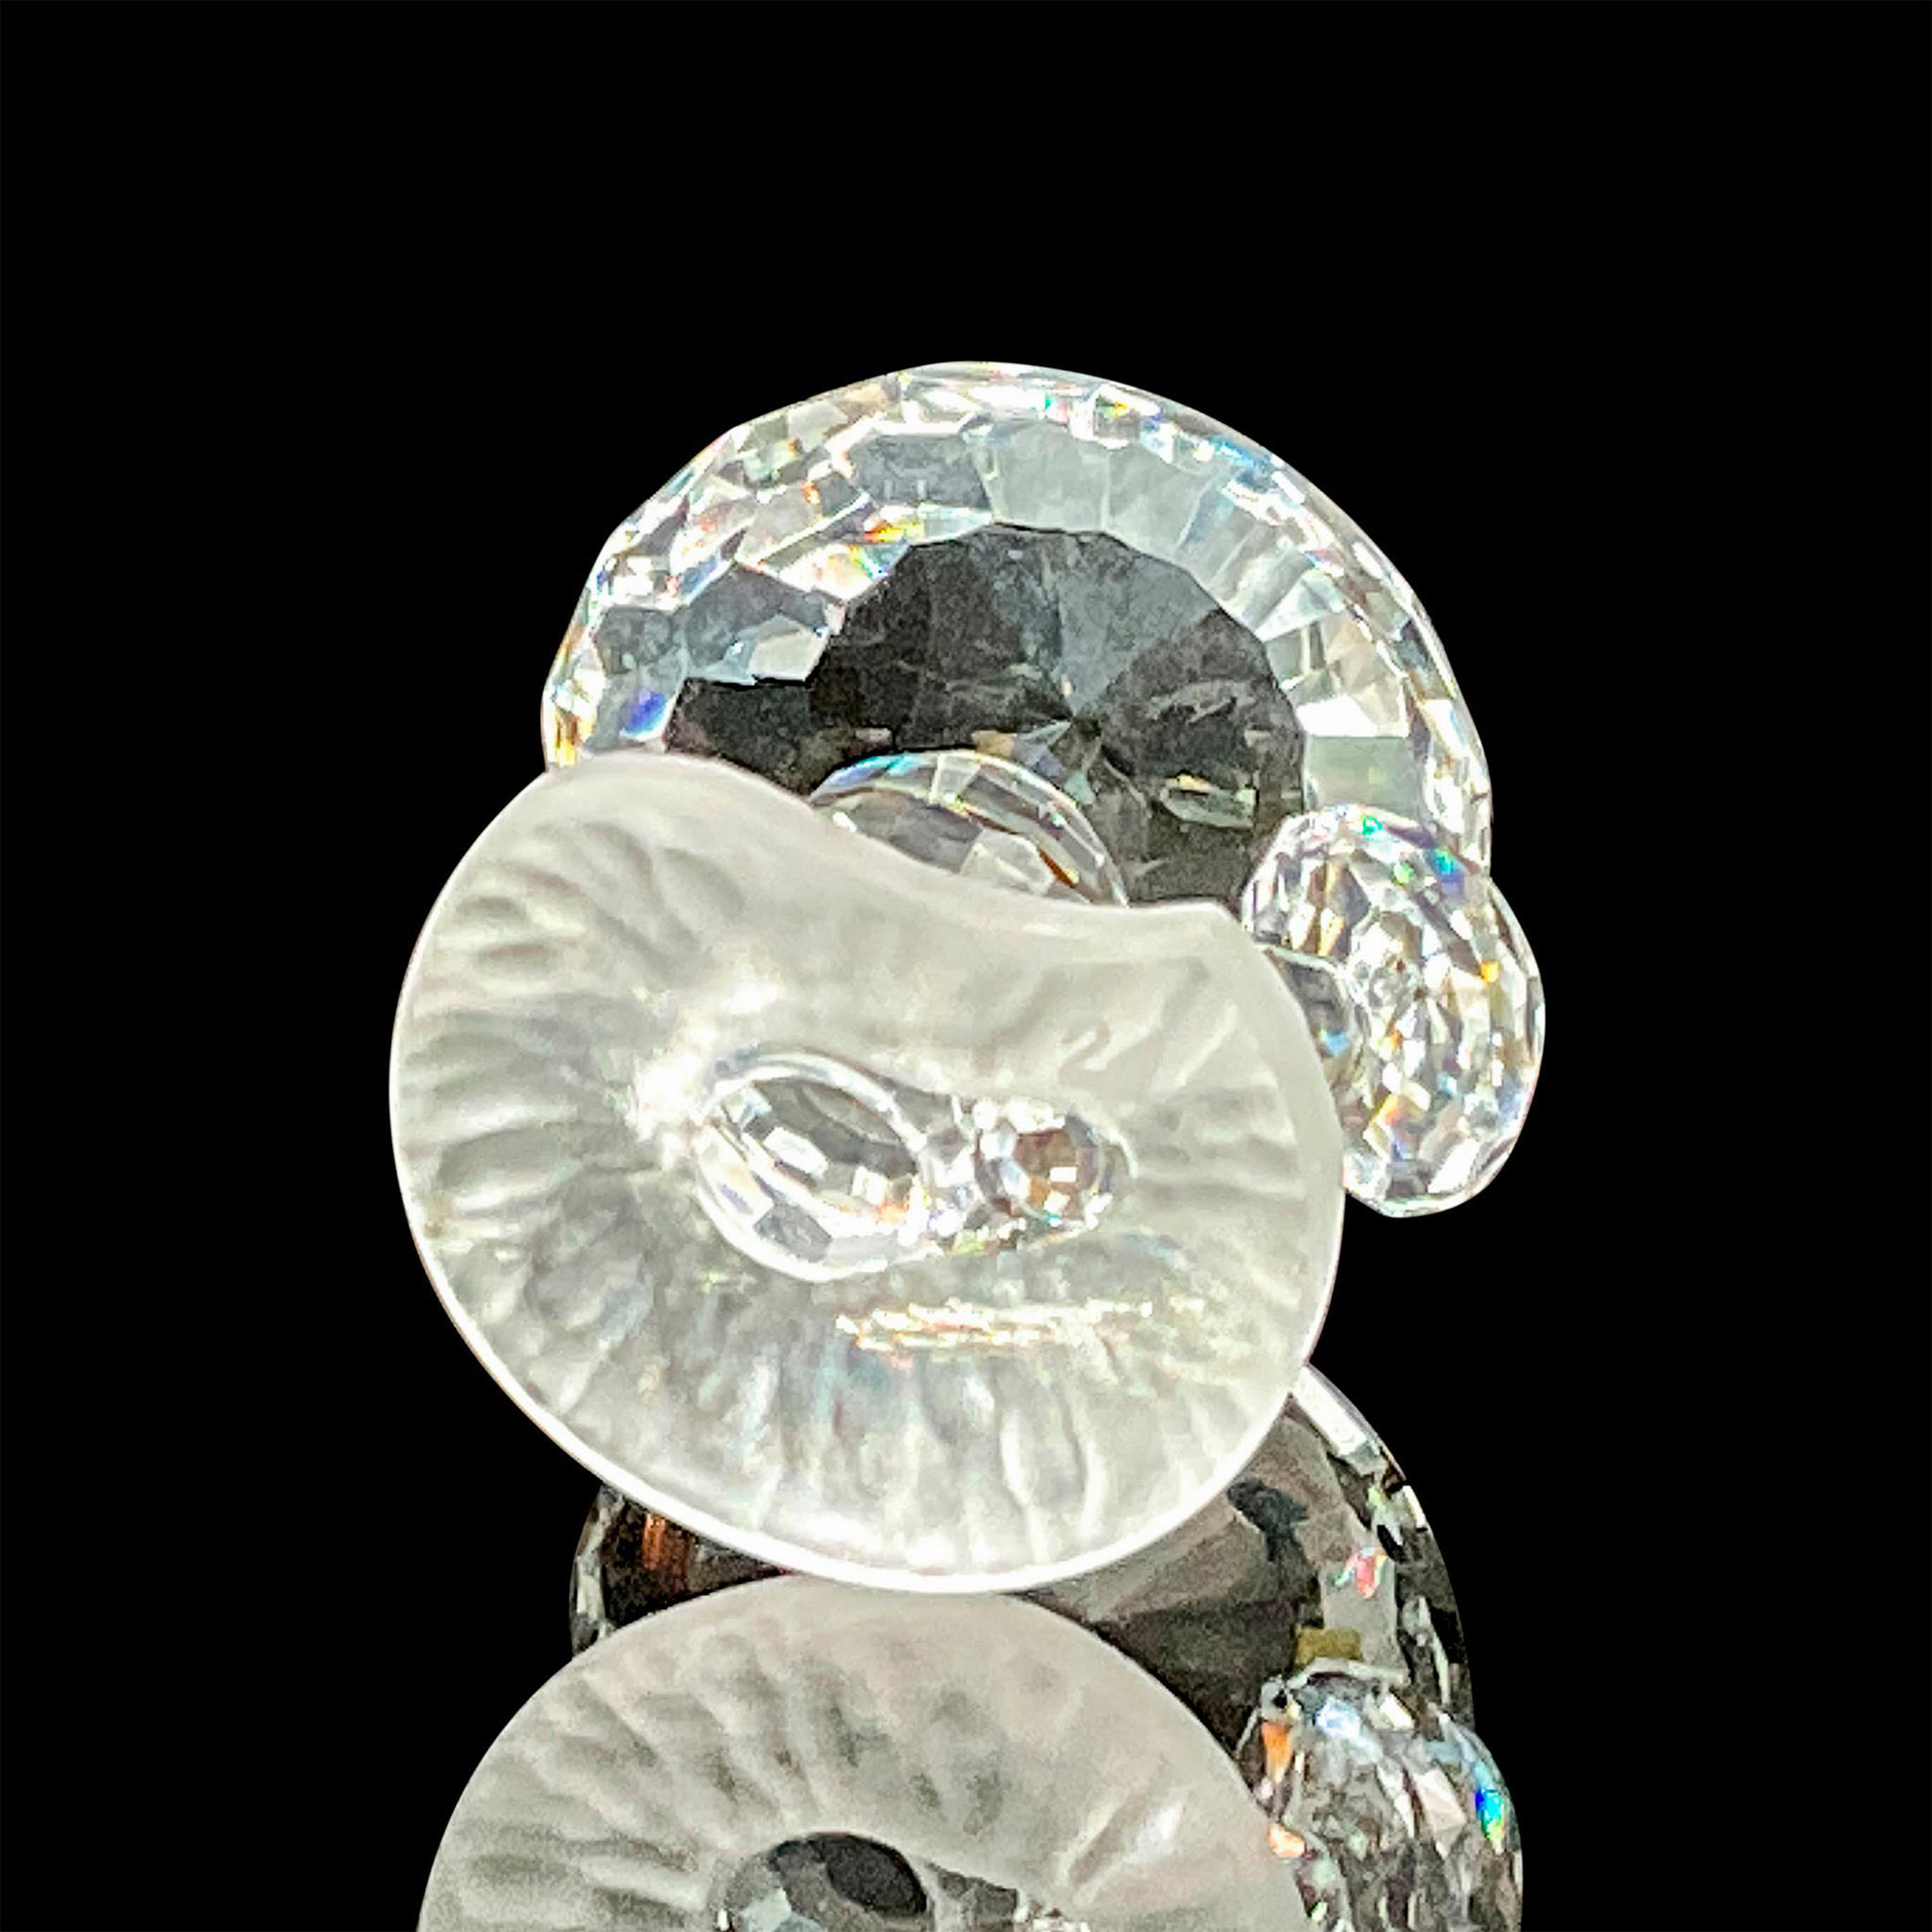 Swarovski Crystal Figurine, Mushrooms - Image 3 of 4